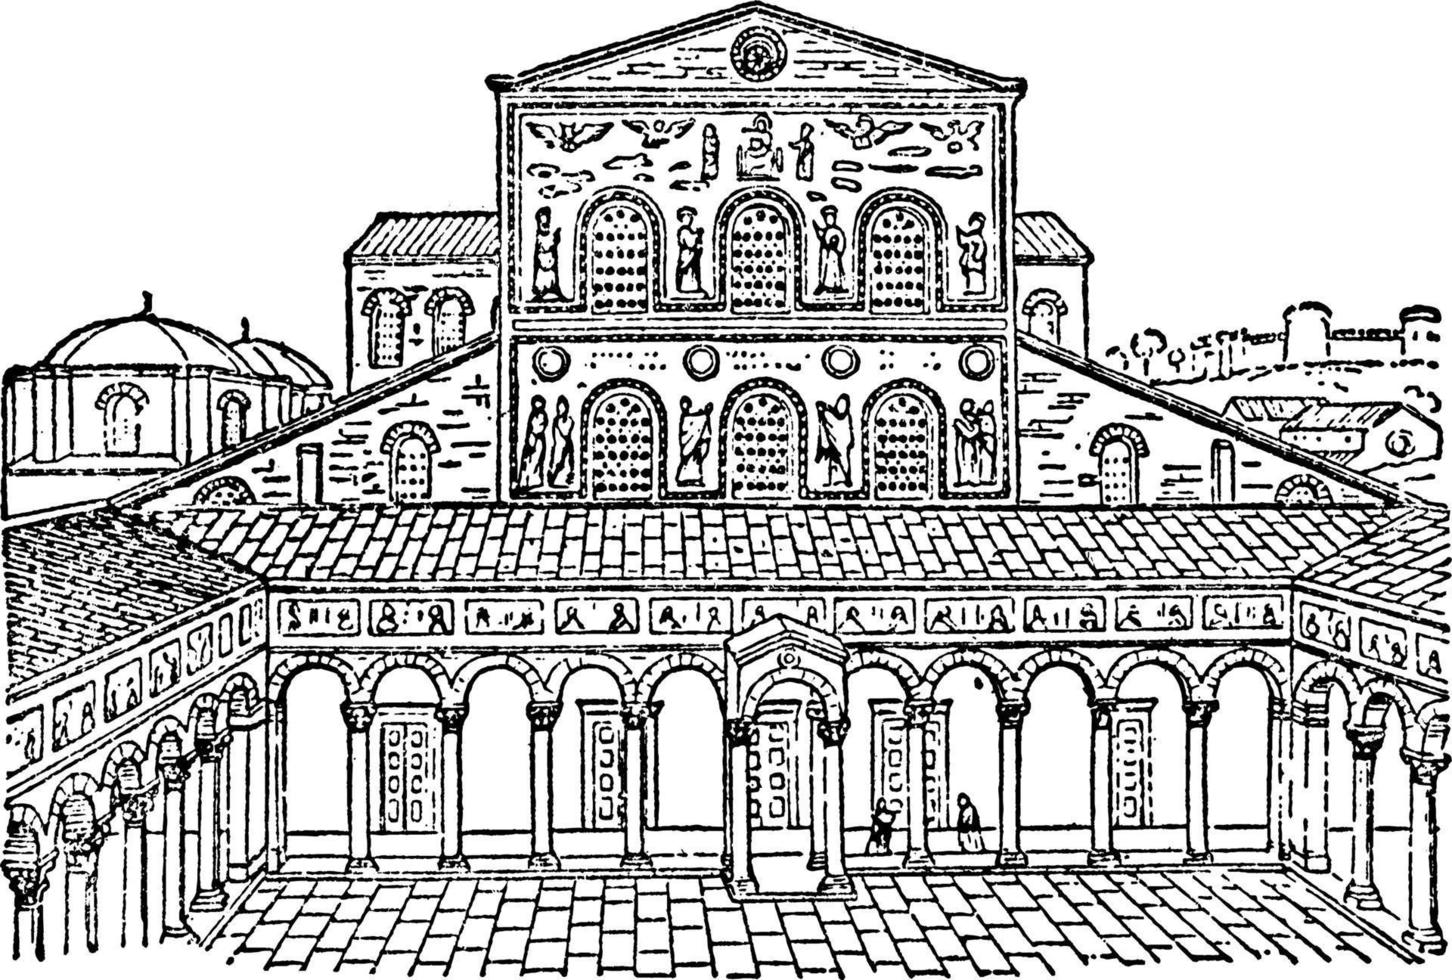 ancienne façade de st. peter's, enclave papale dans la ville de rome, gravure vintage. vecteur